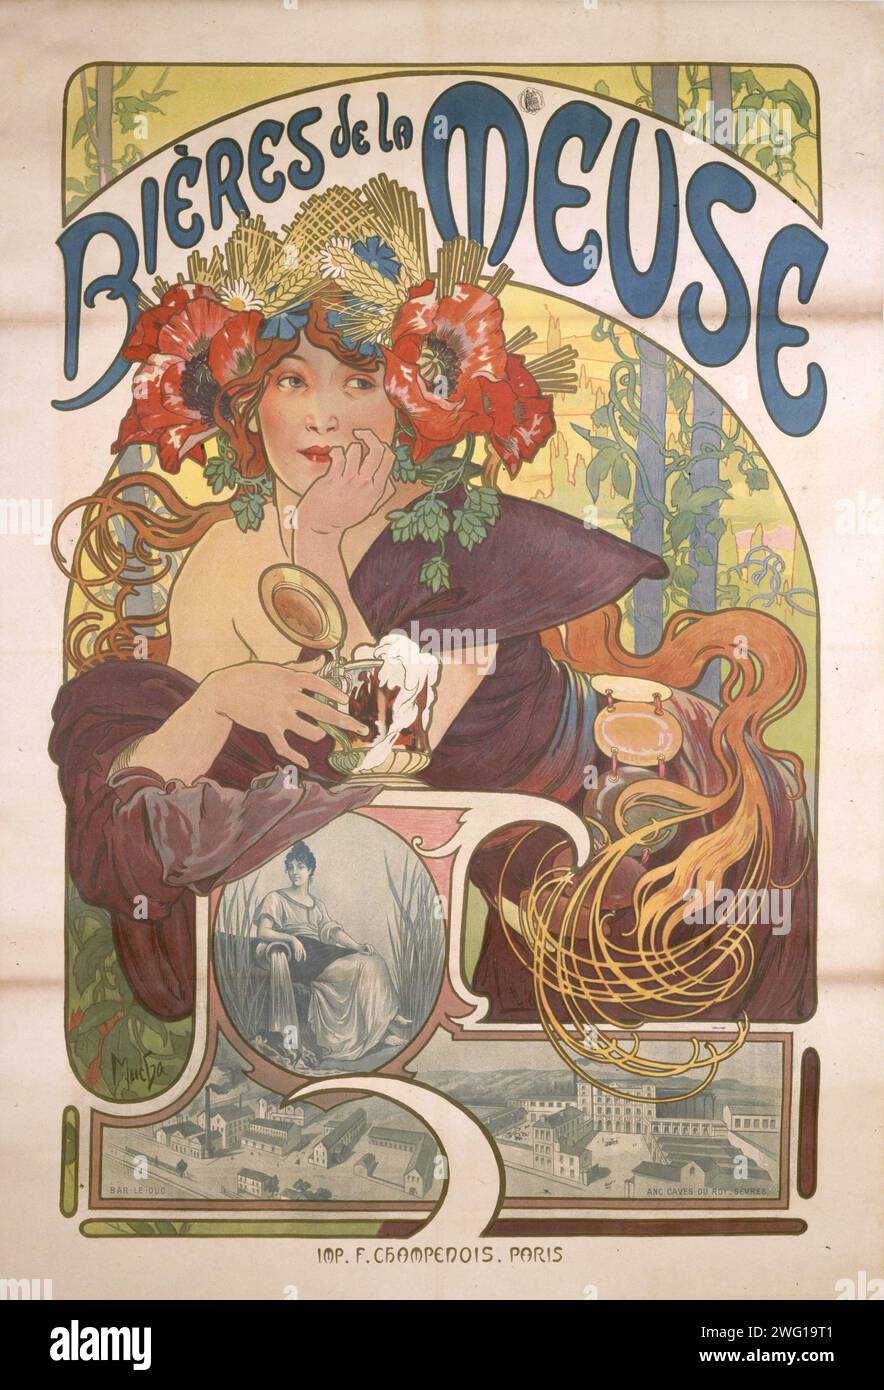 Alphonse Mucha (1860-1939). "Bières de la Meuse", poster. Poster in stile Art Nouveau che pubblicizza la birra della regione francese de Meuse Foto Stock